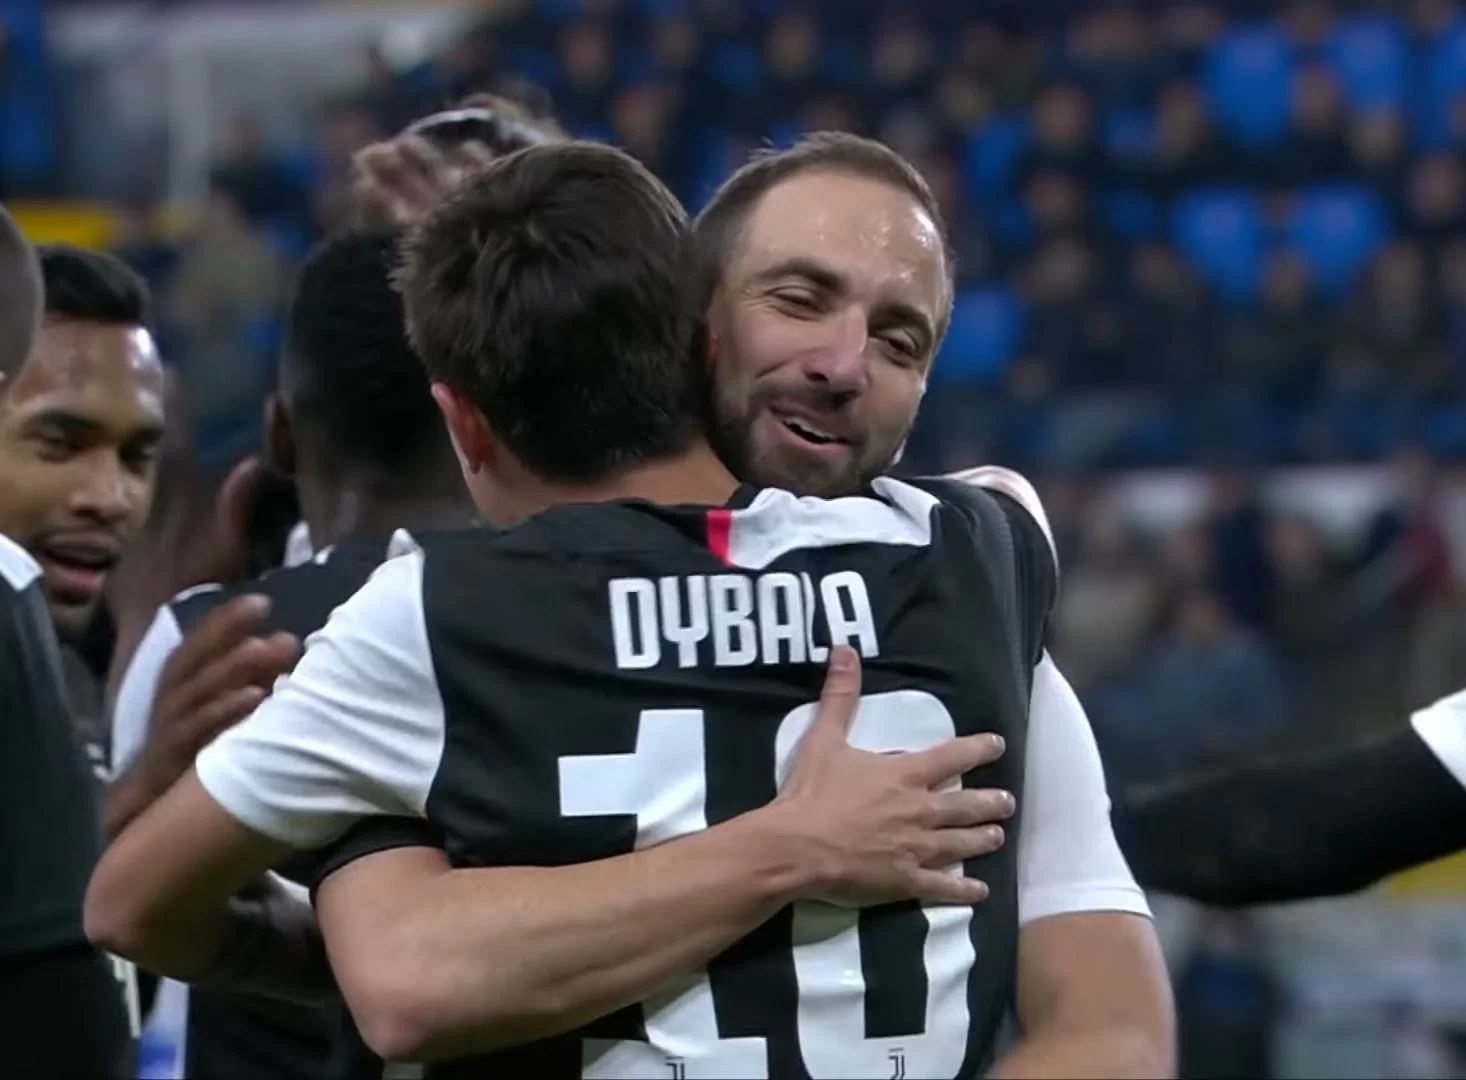 L’eterna staffetta: Dybala e Higuain tra i giocatori più sostituiti del girone d’andata